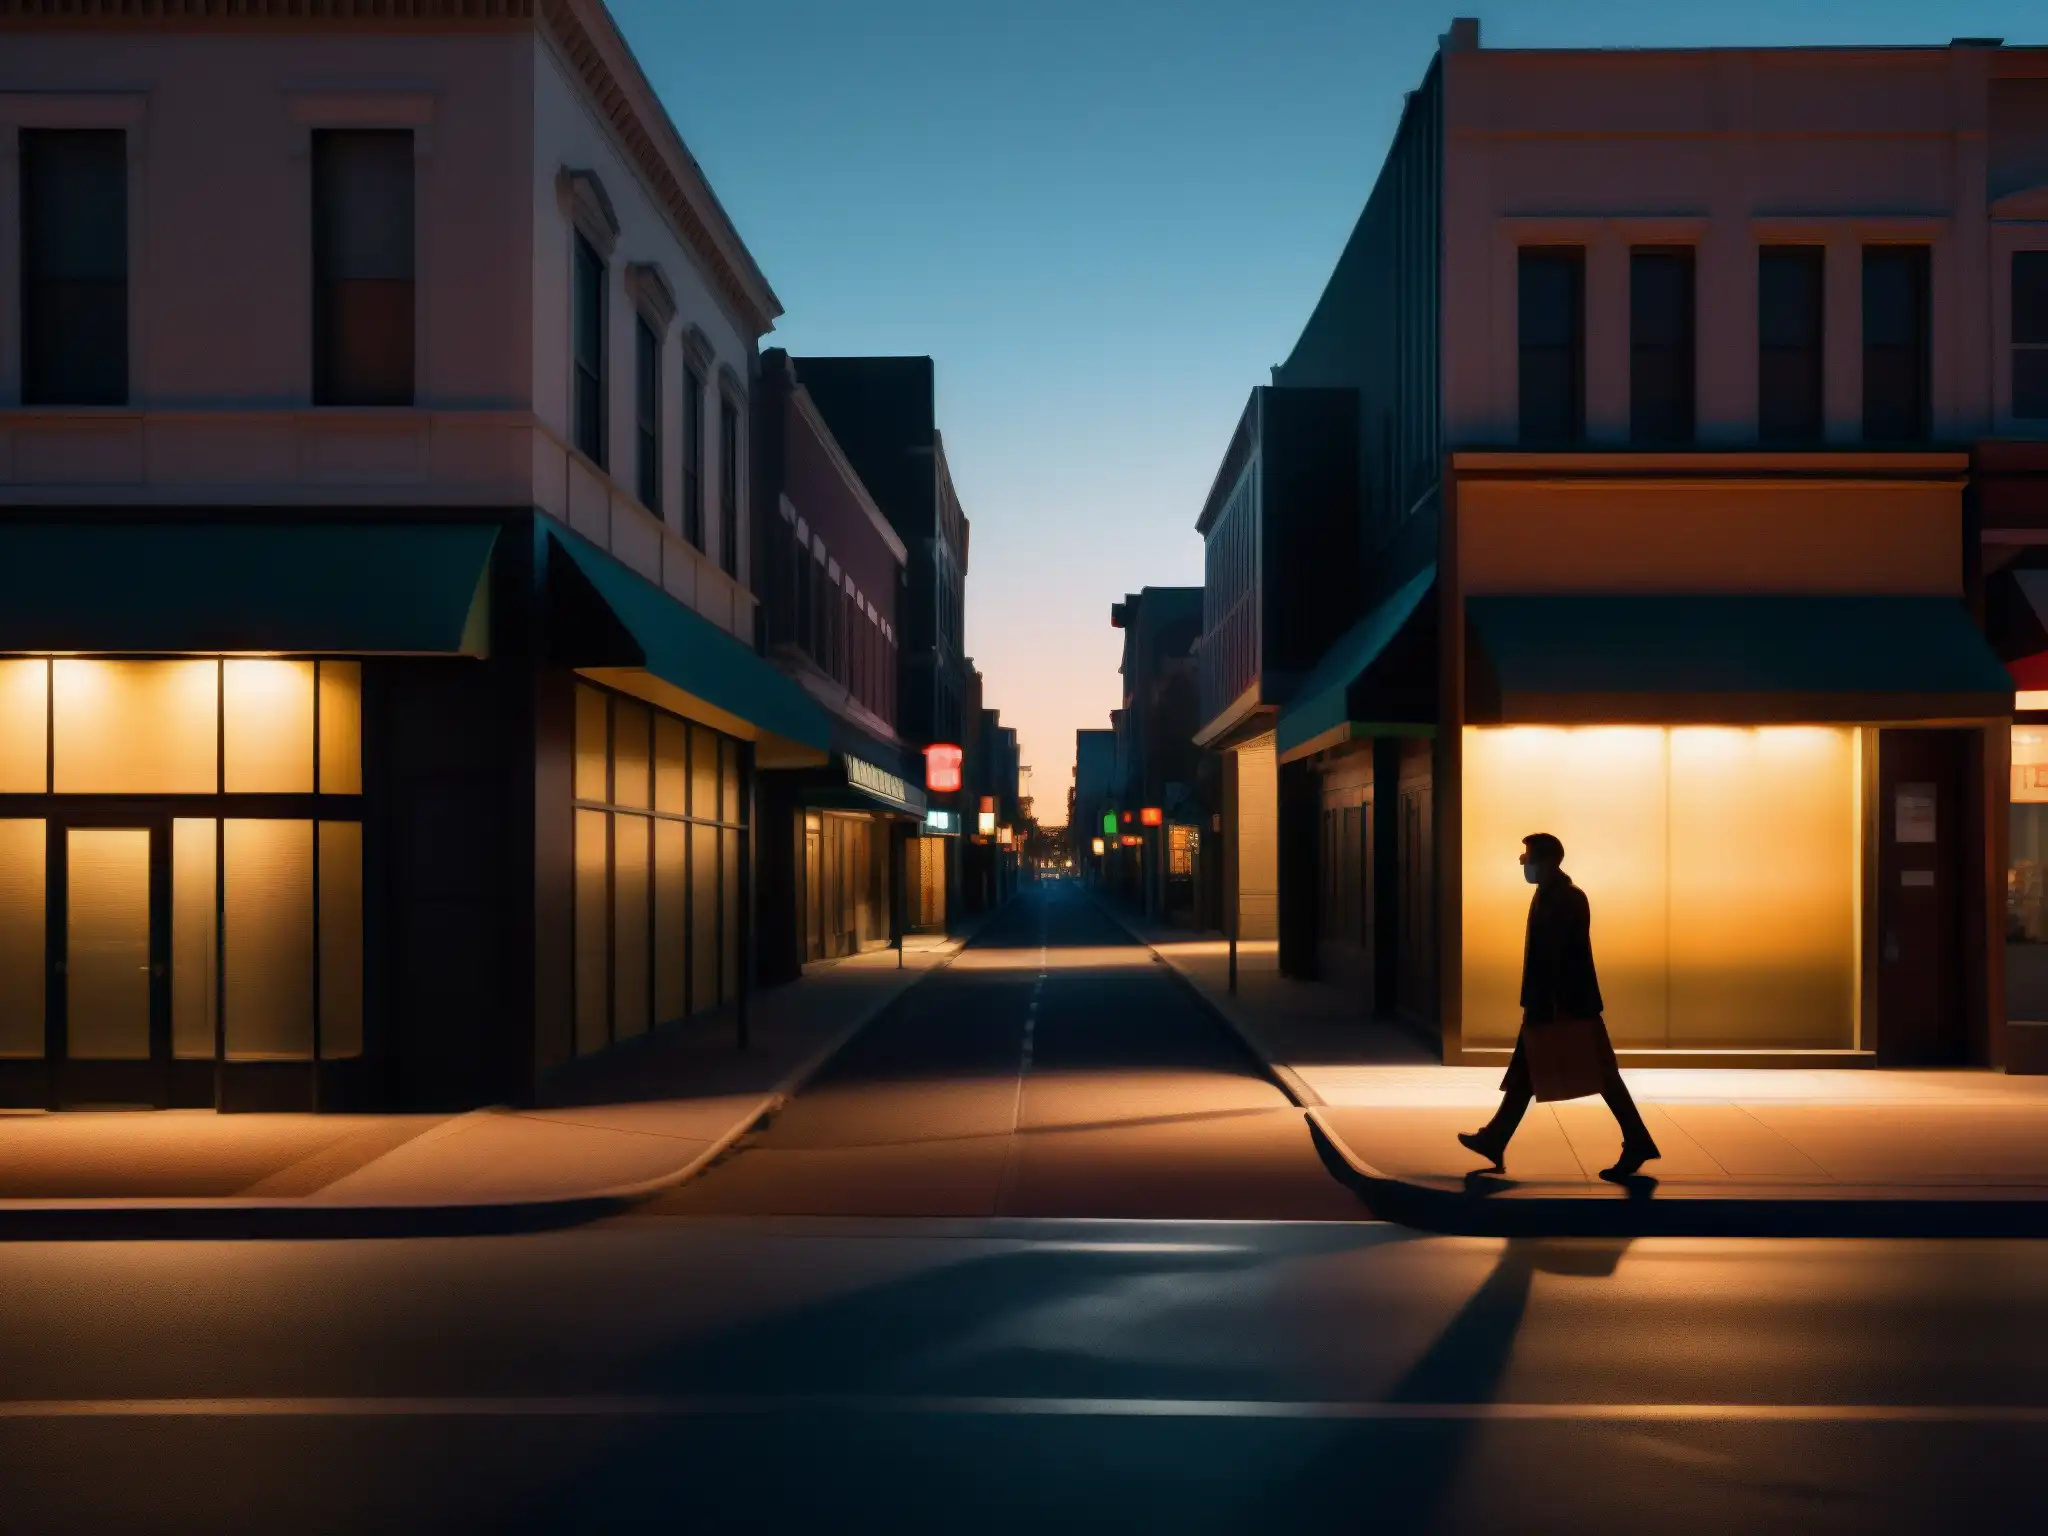 Figura solitaria con máscara camina por calle oscura de la ciudad, aumentando sensación de miedo y leyendas urbanas en pandemia